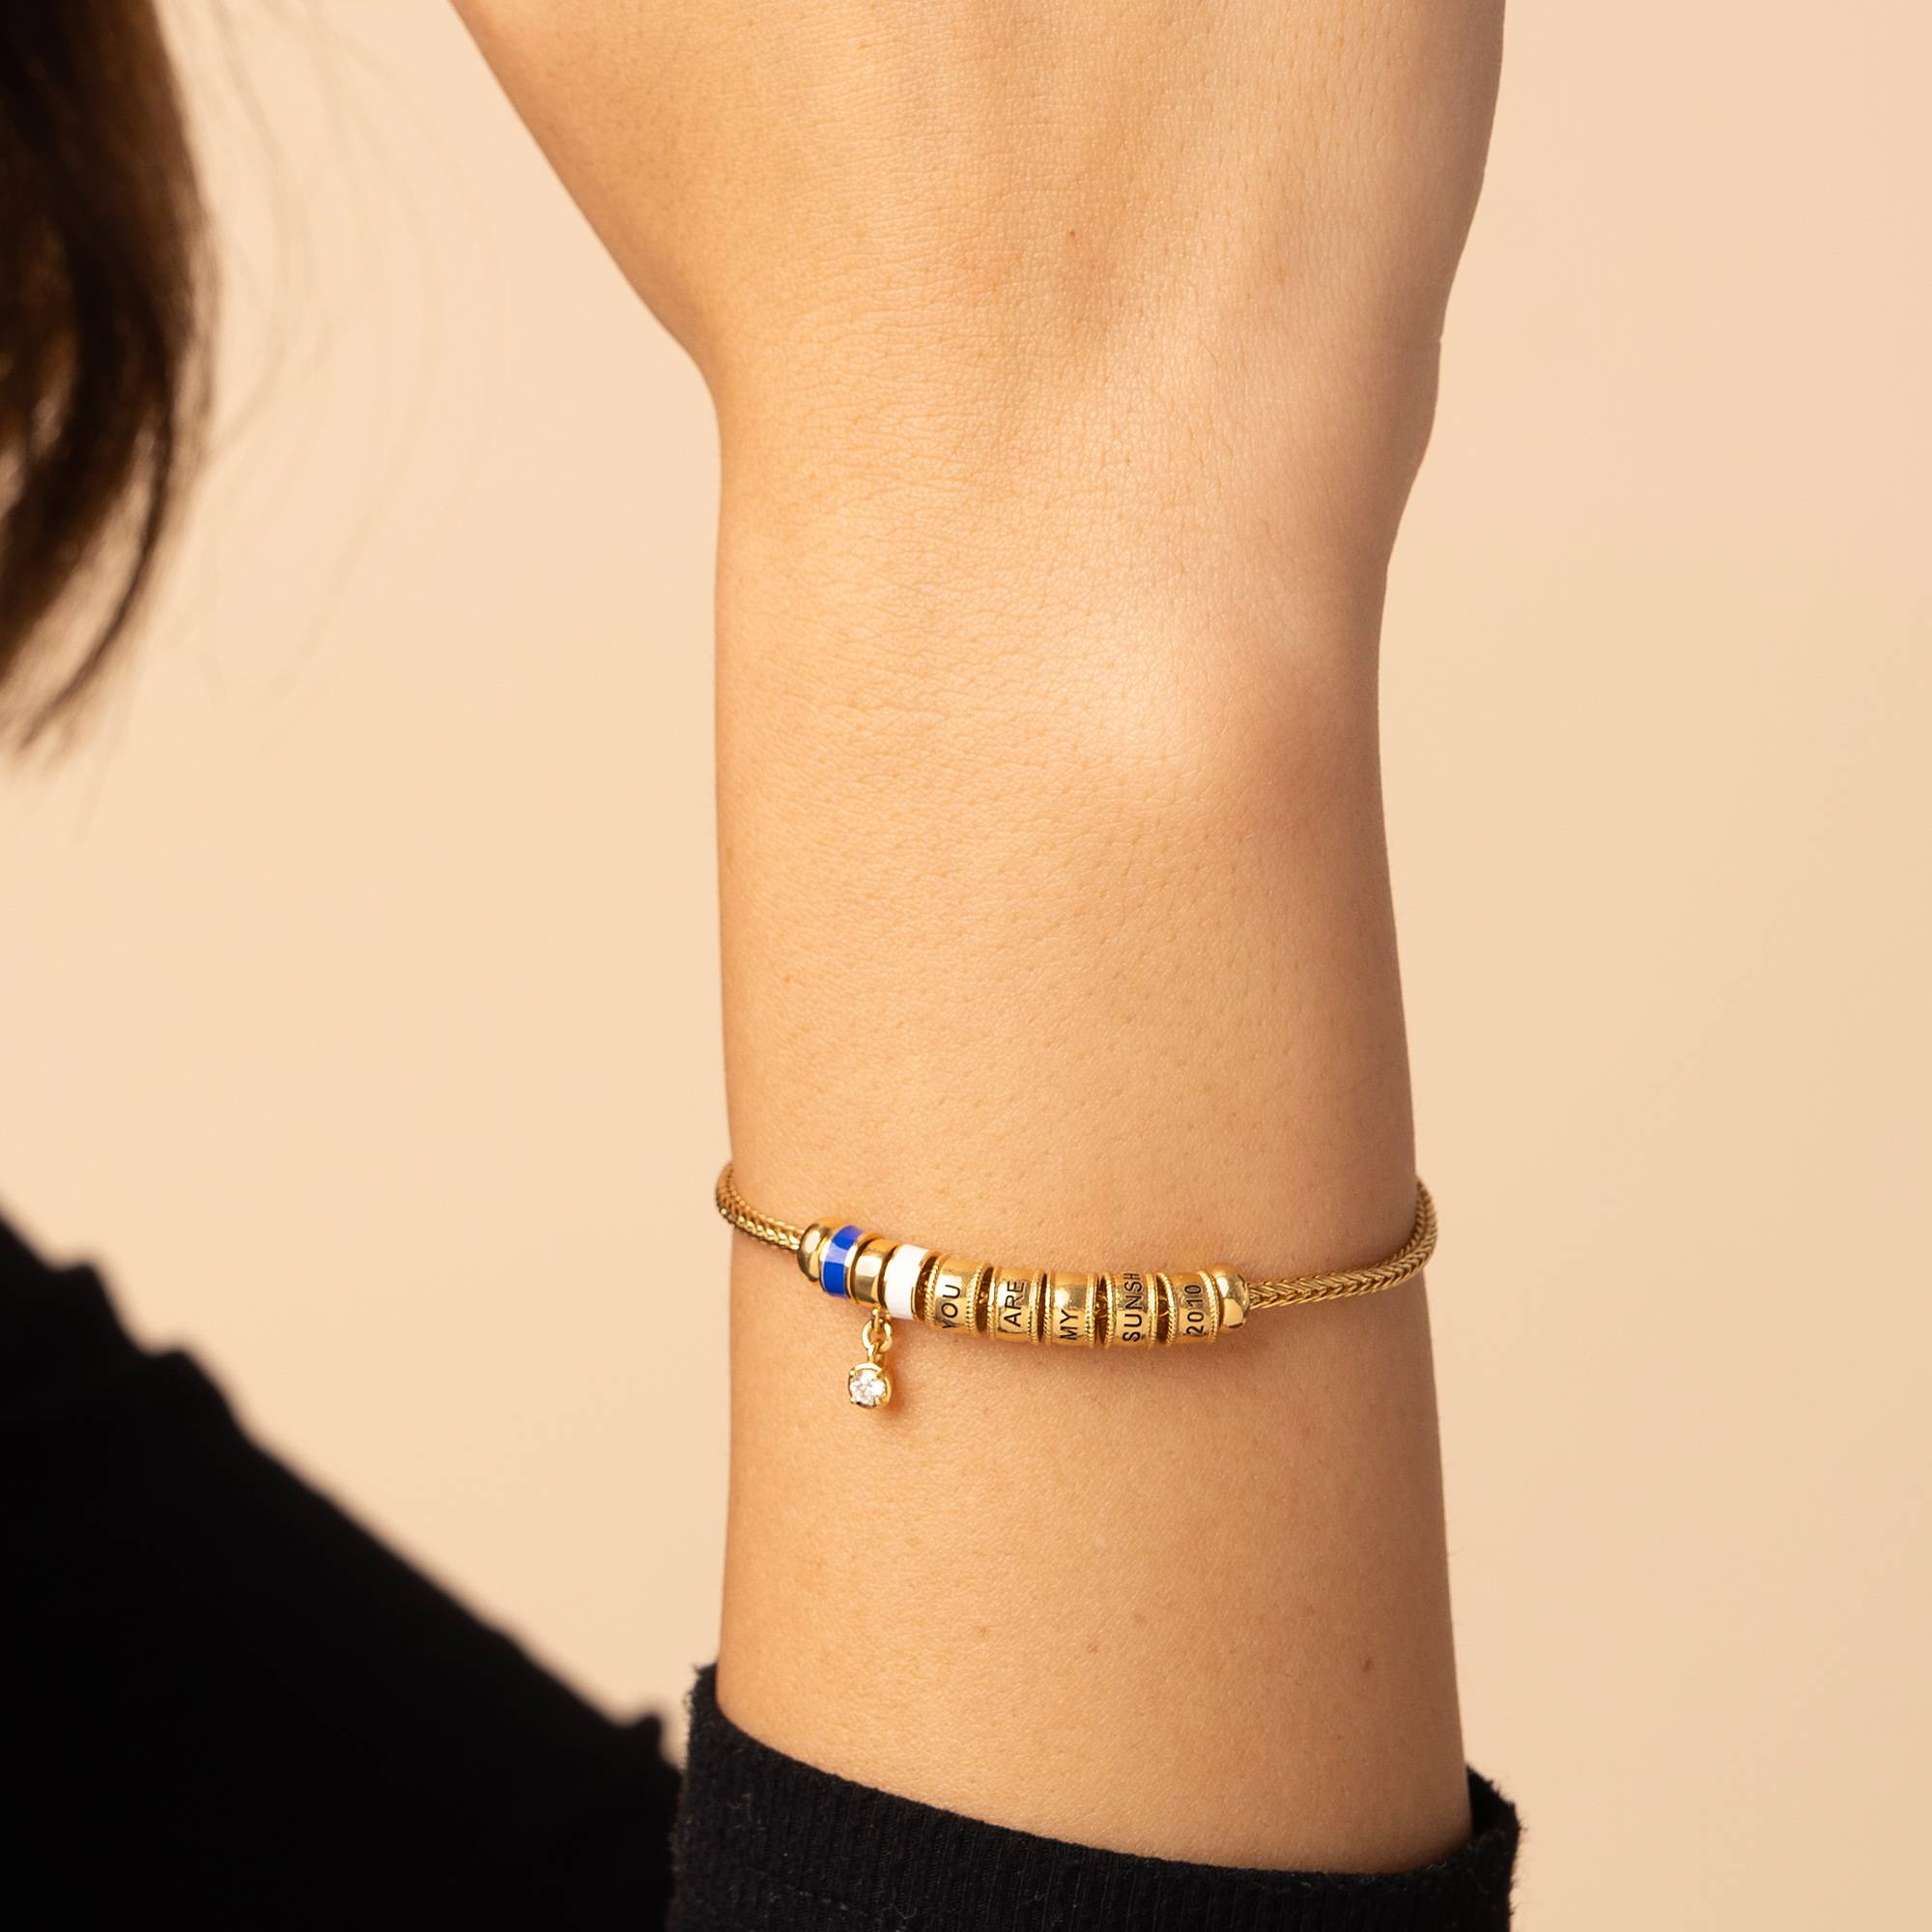 Linda Charm-Armband mit Herzverschluss, Perle und Emailleperlen - 750er Gold-Vermeil-2 Produktfoto